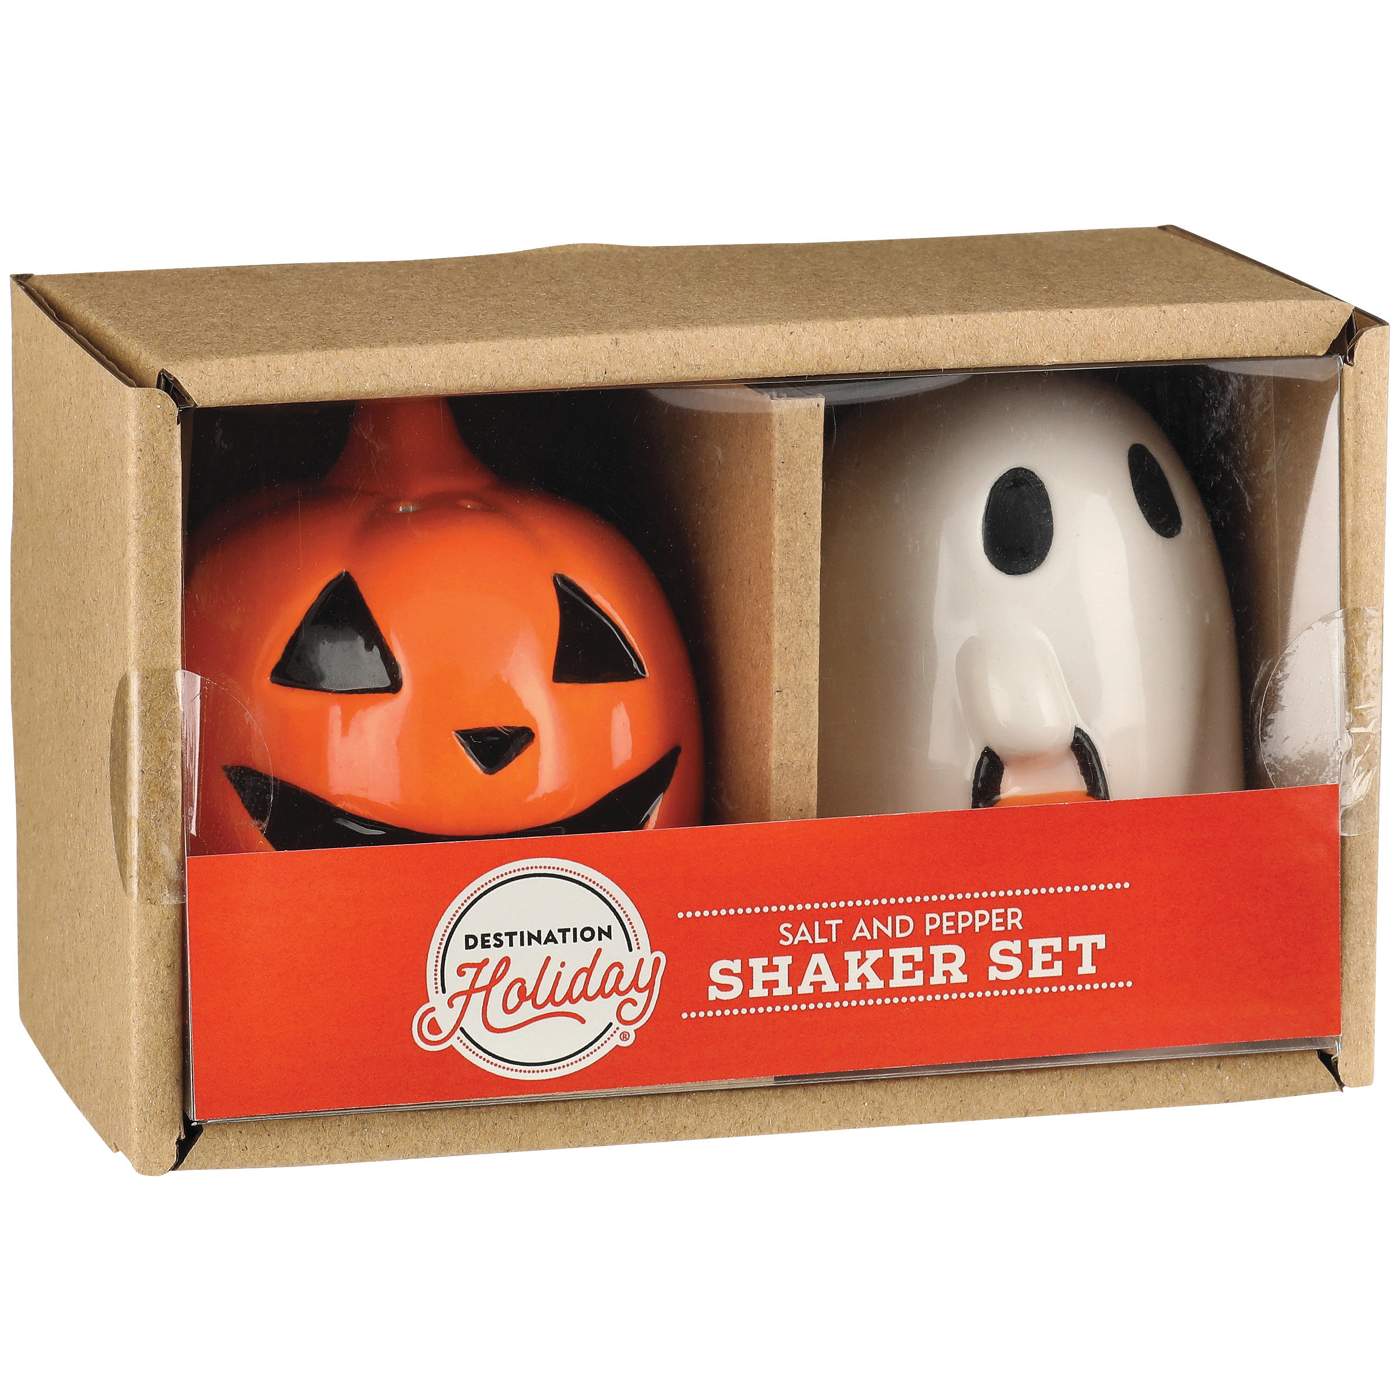 Destination Holiday Costumed Ghost & Jack-o'-lantern Ceramic Salt & Pepper Shaker Set; image 1 of 2